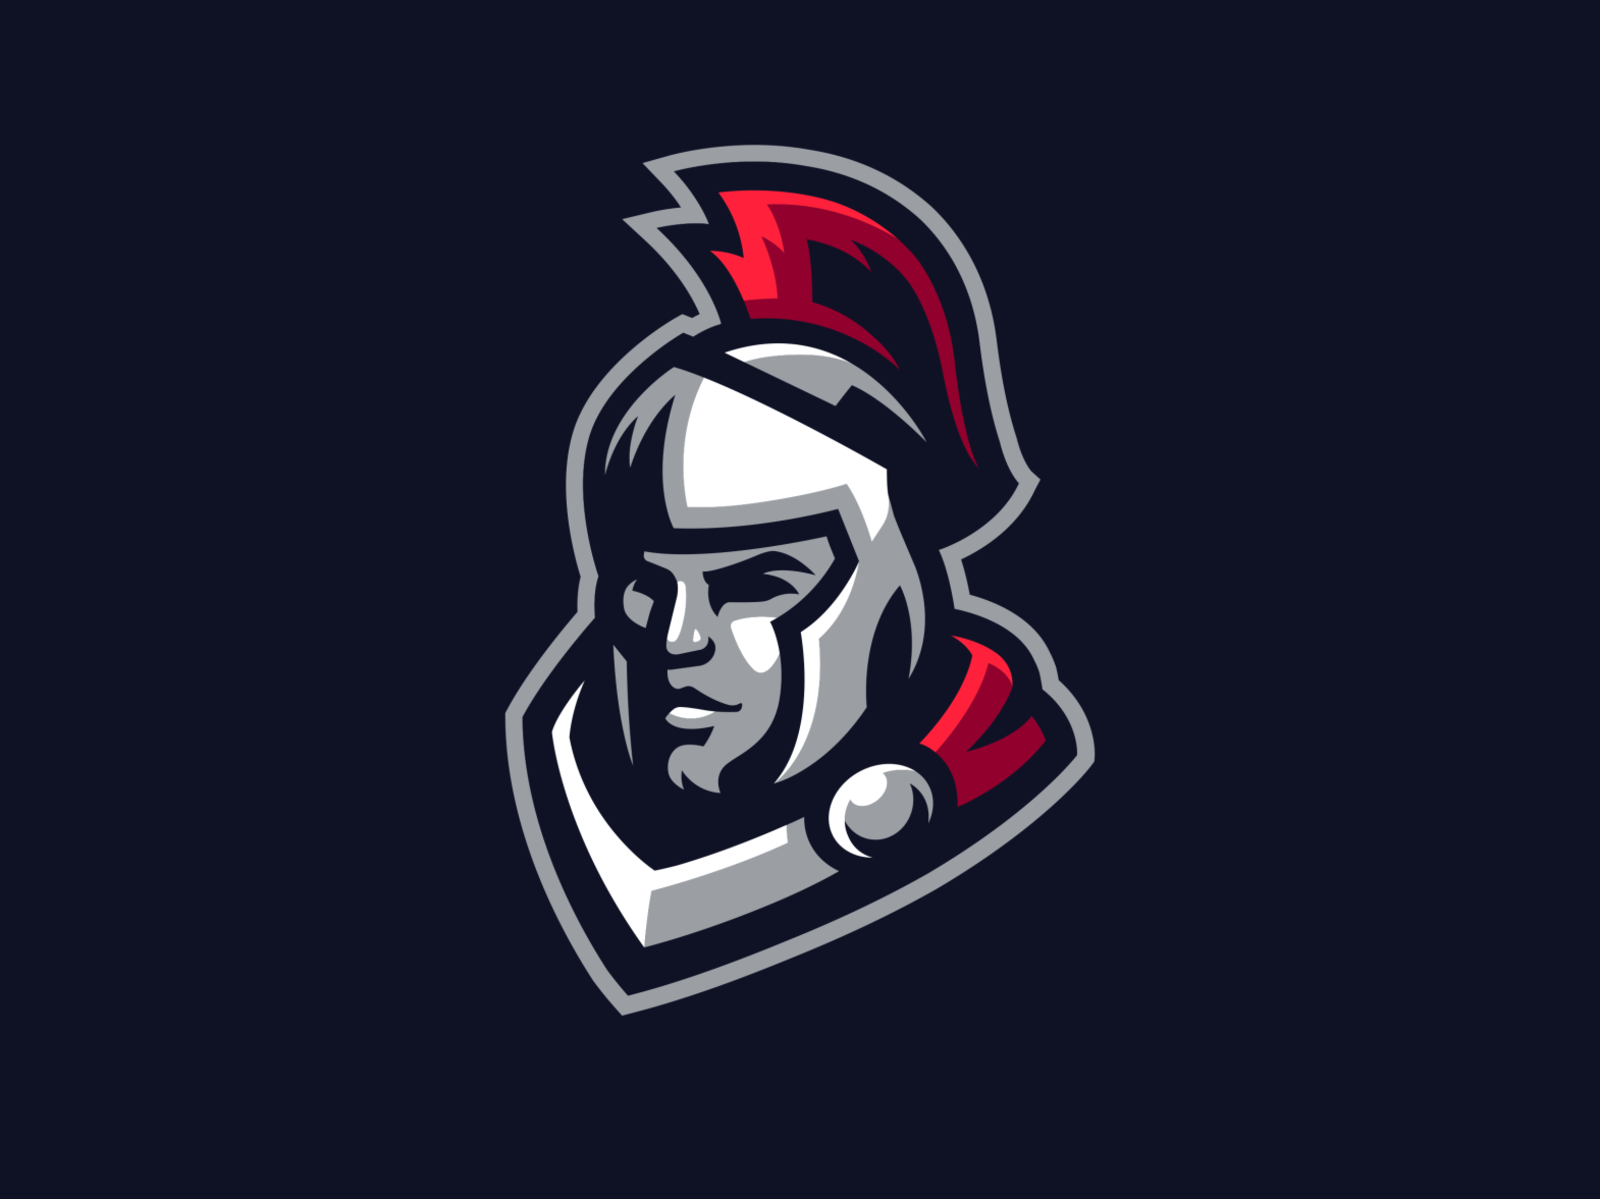 Spartan Mascot Logo by Koen on Dribbble